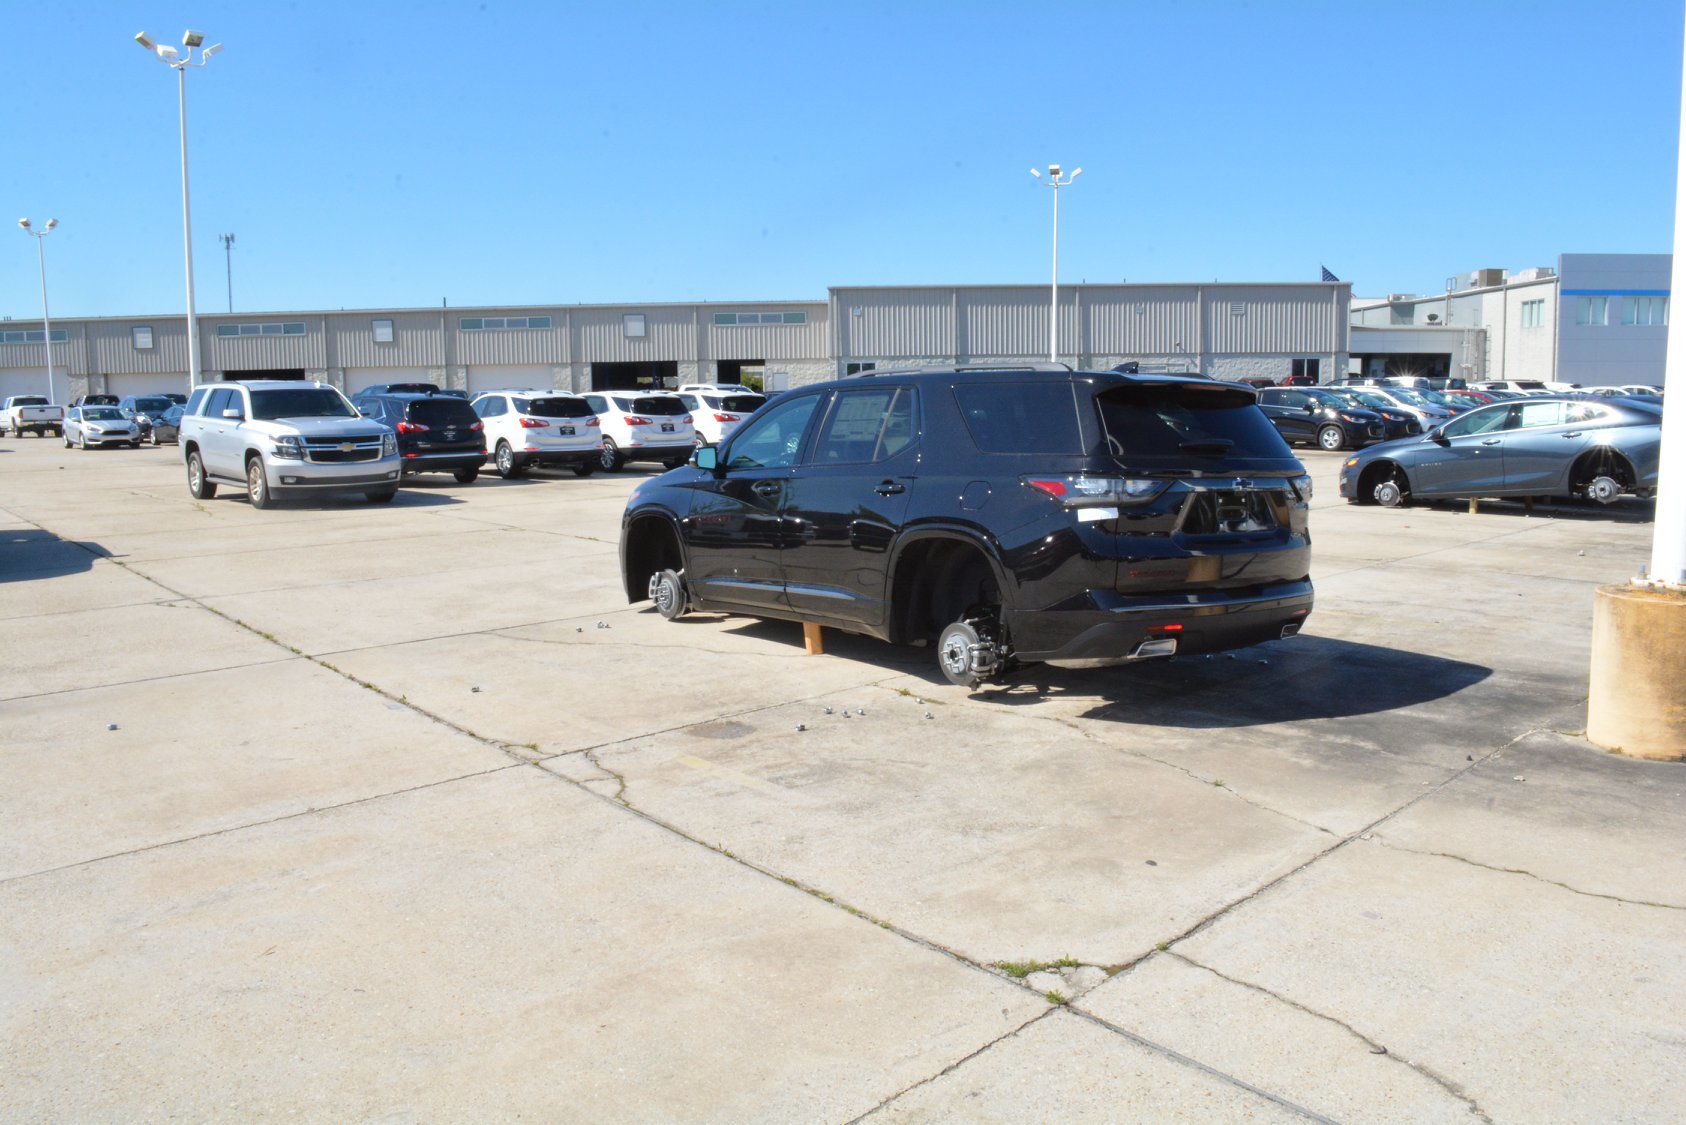 Zloději ukradli z dealerství Chevroletu 124 kol a způsobili škodu přes 2.7 milionu korun (Facebook/Slidell Police Department)